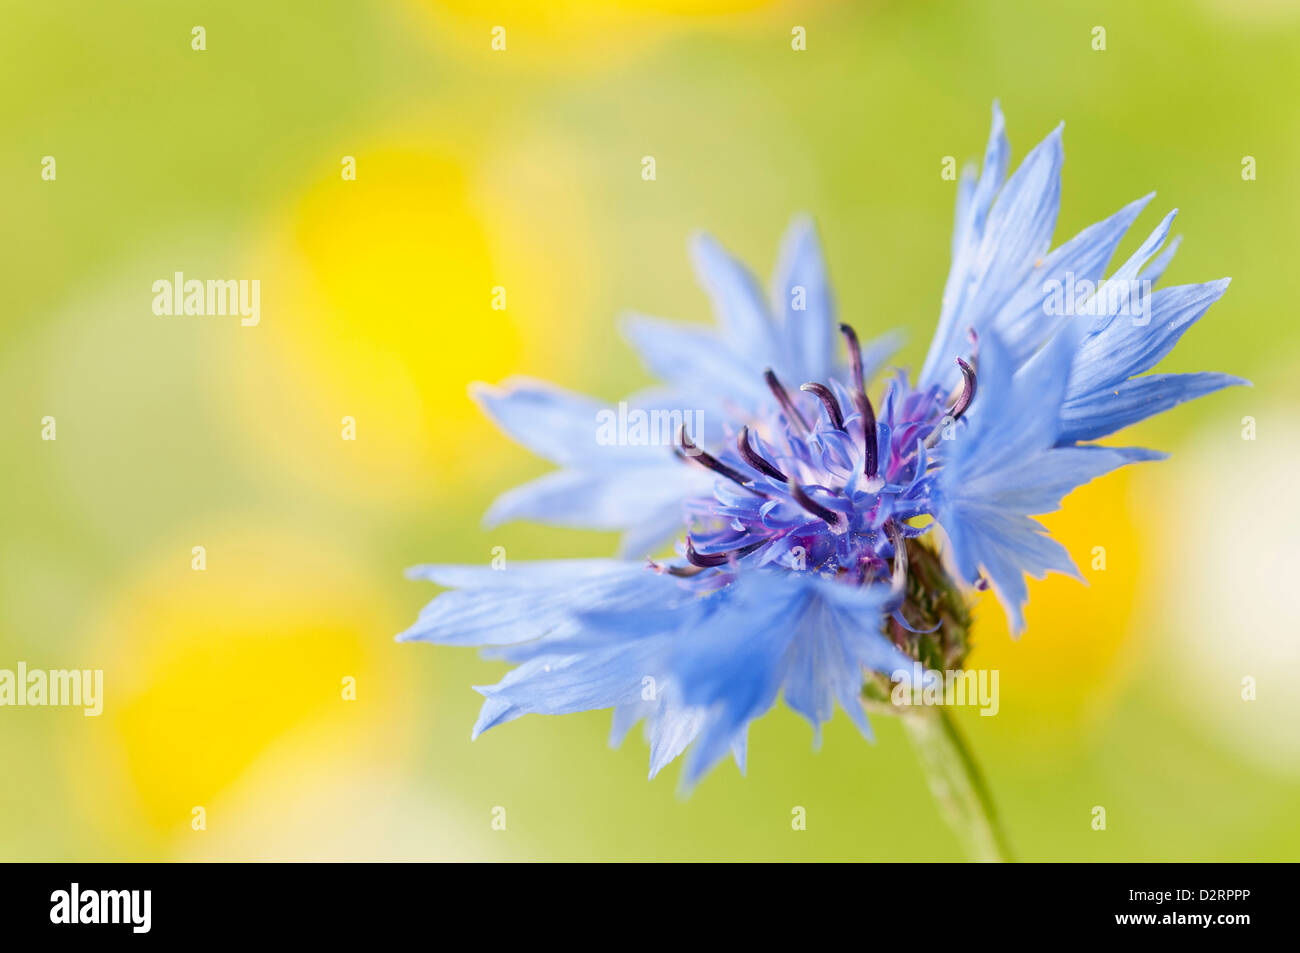 Centaurea cyanus, Cornflower, Blue flower against yellow and green garden background. Stock Photo